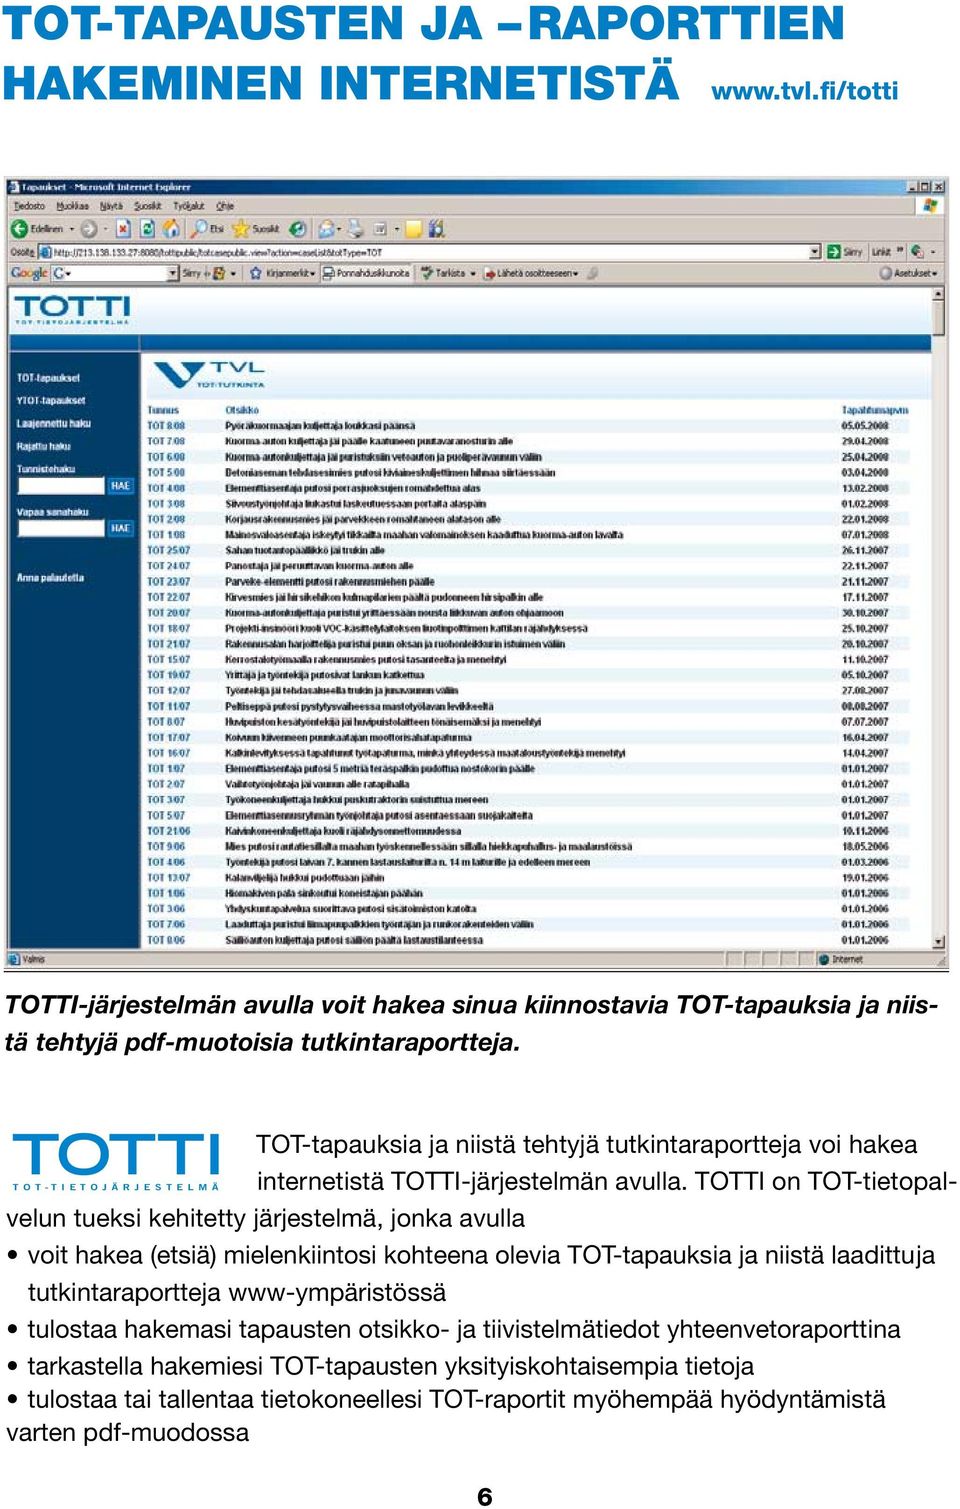 TOTTI on TOT-tietopalvelun tueksi kehitetty järjestelmä, jonka avulla voit hakea (etsiä) mielenkiintosi kohteena olevia TOT-tapauksia ja niistä laadittu ja tutkintaraportteja www-ympäristössä